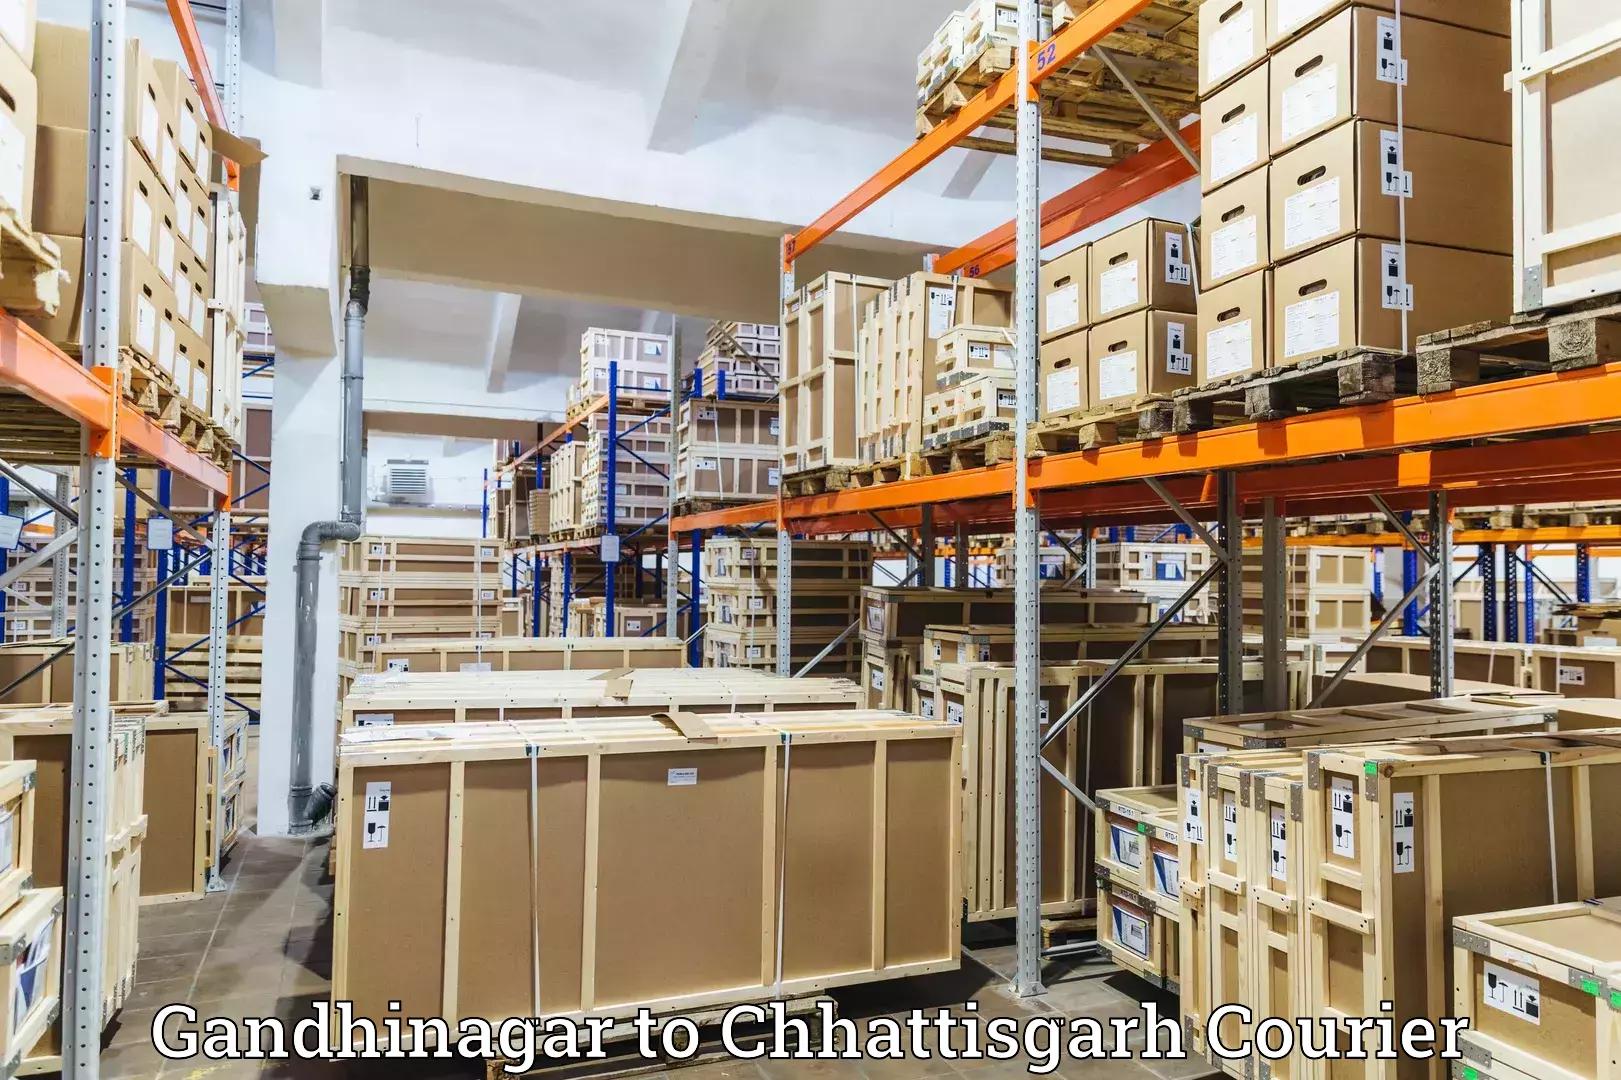 Cash on delivery service Gandhinagar to Chhattisgarh